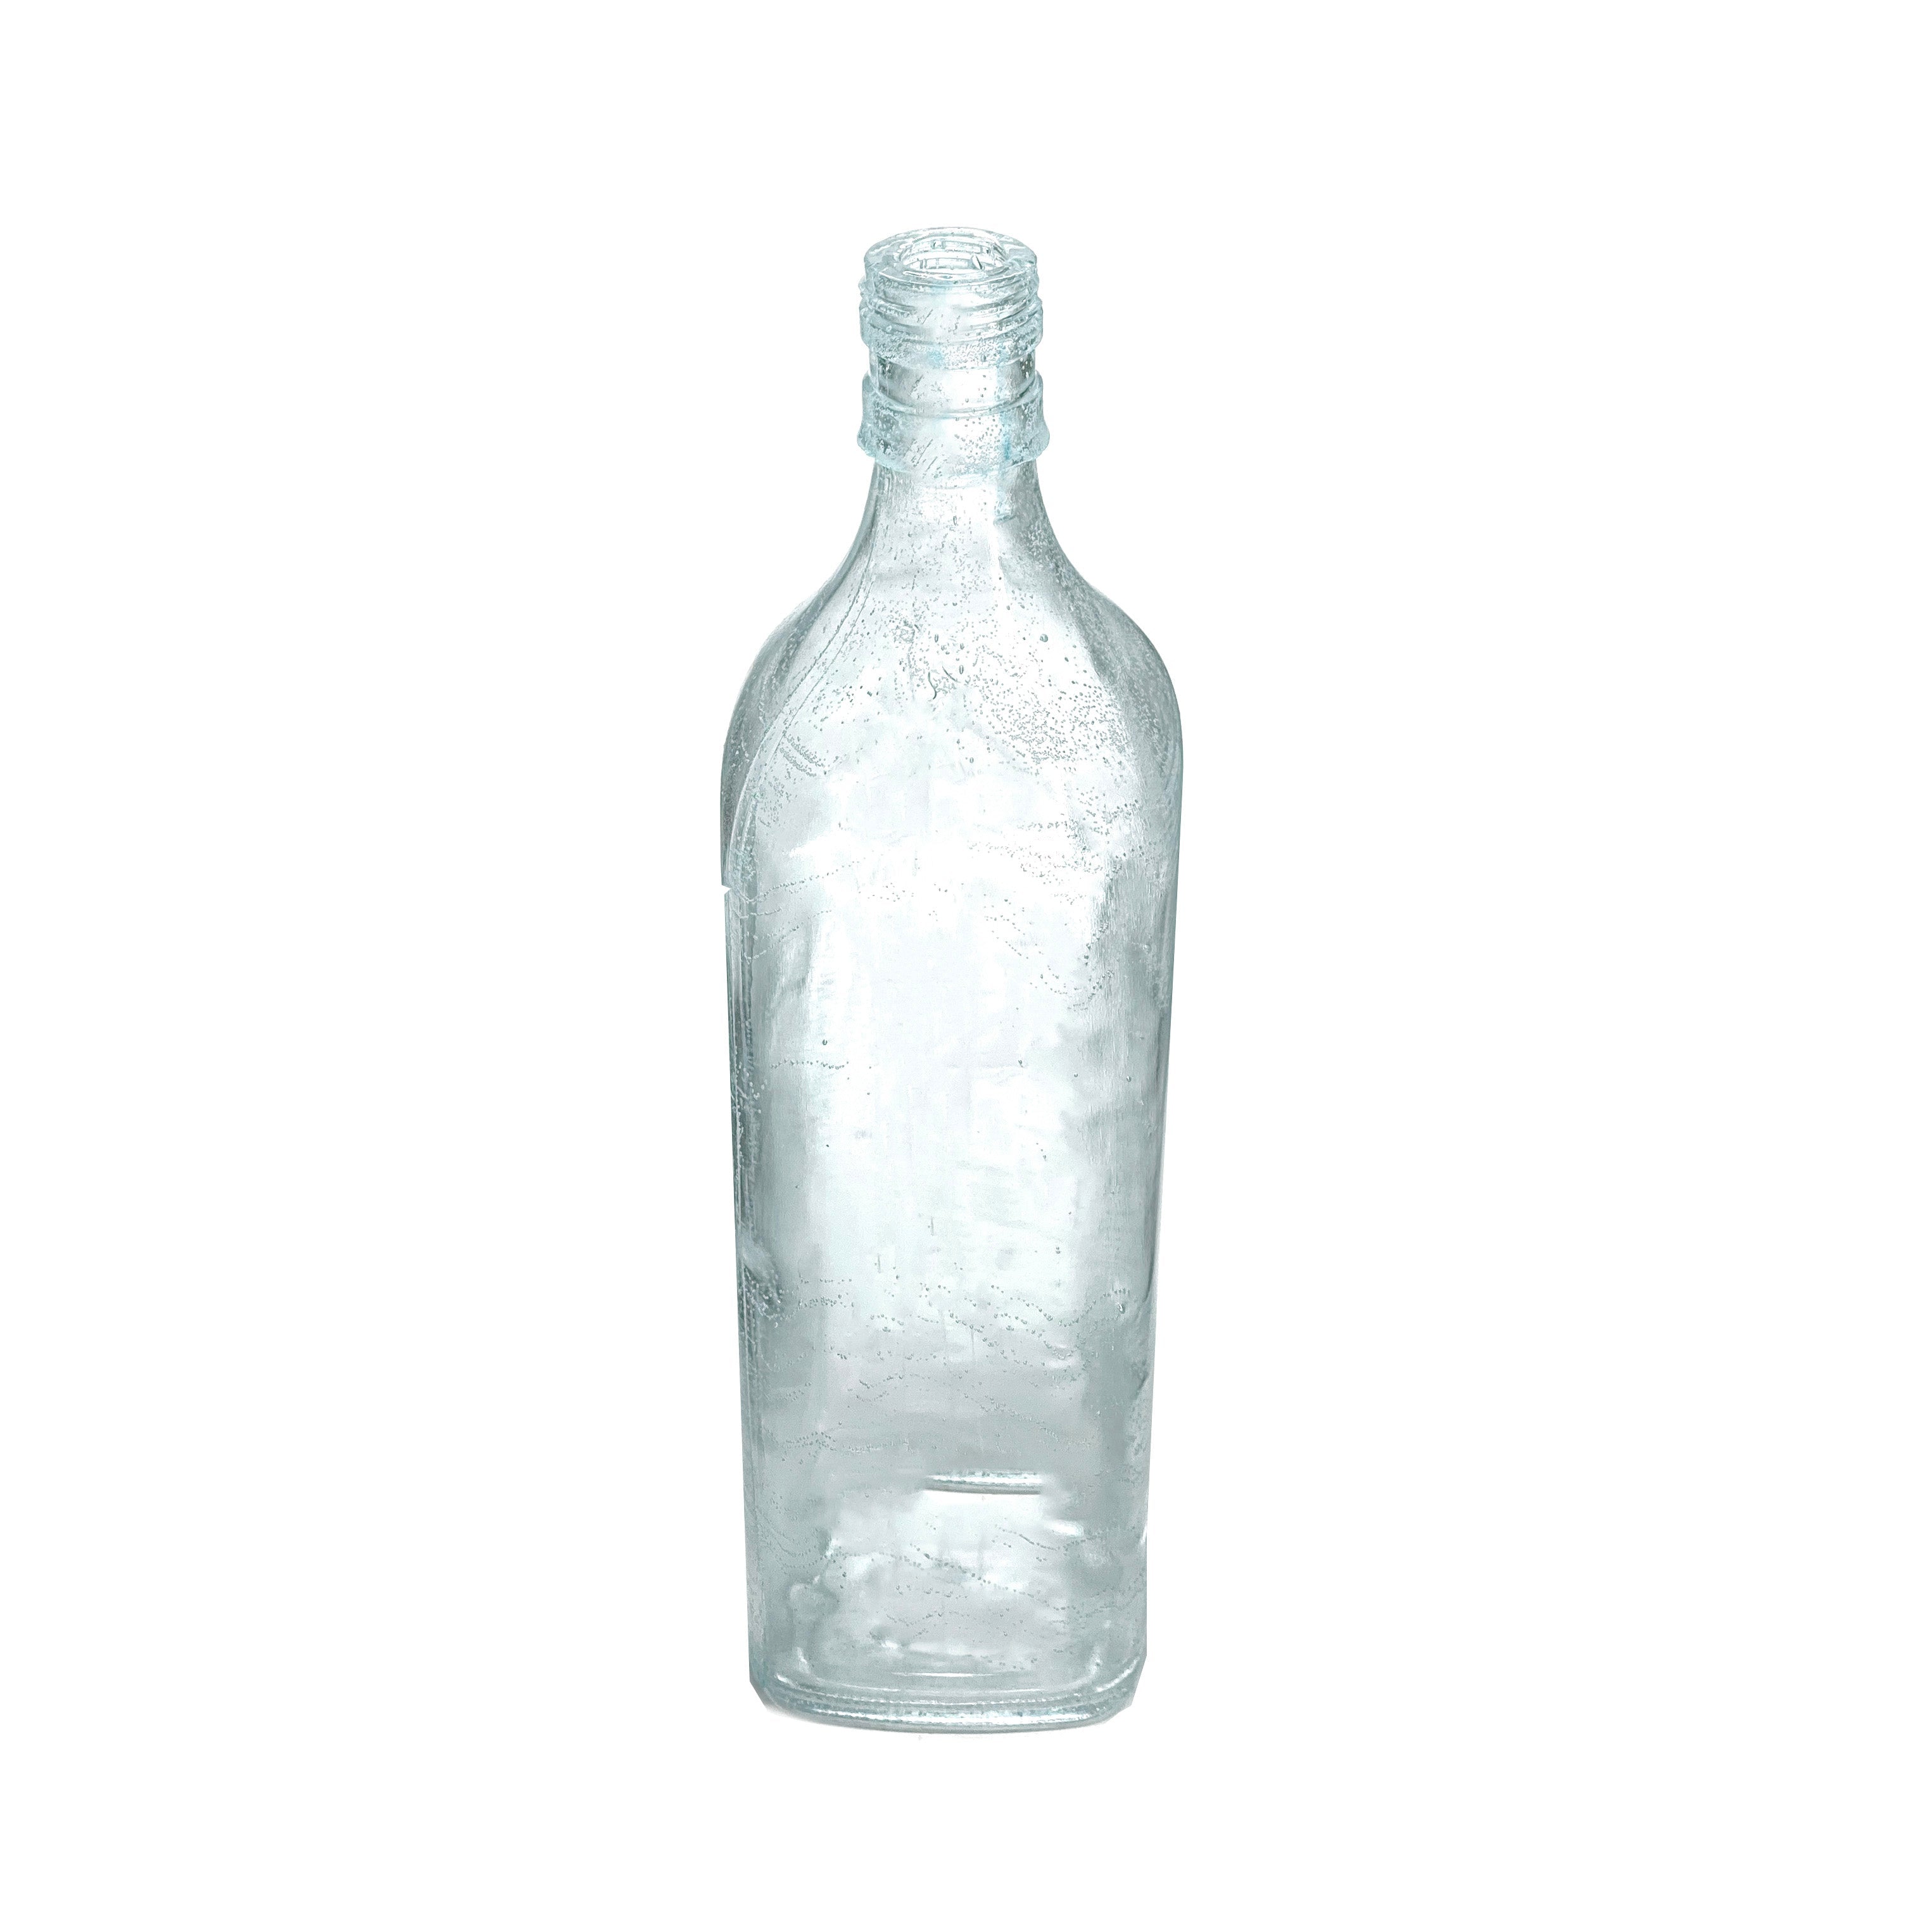 SMASHProps Breakaway Scotch Whiskey Bottle Prop - CLEAR - Clear